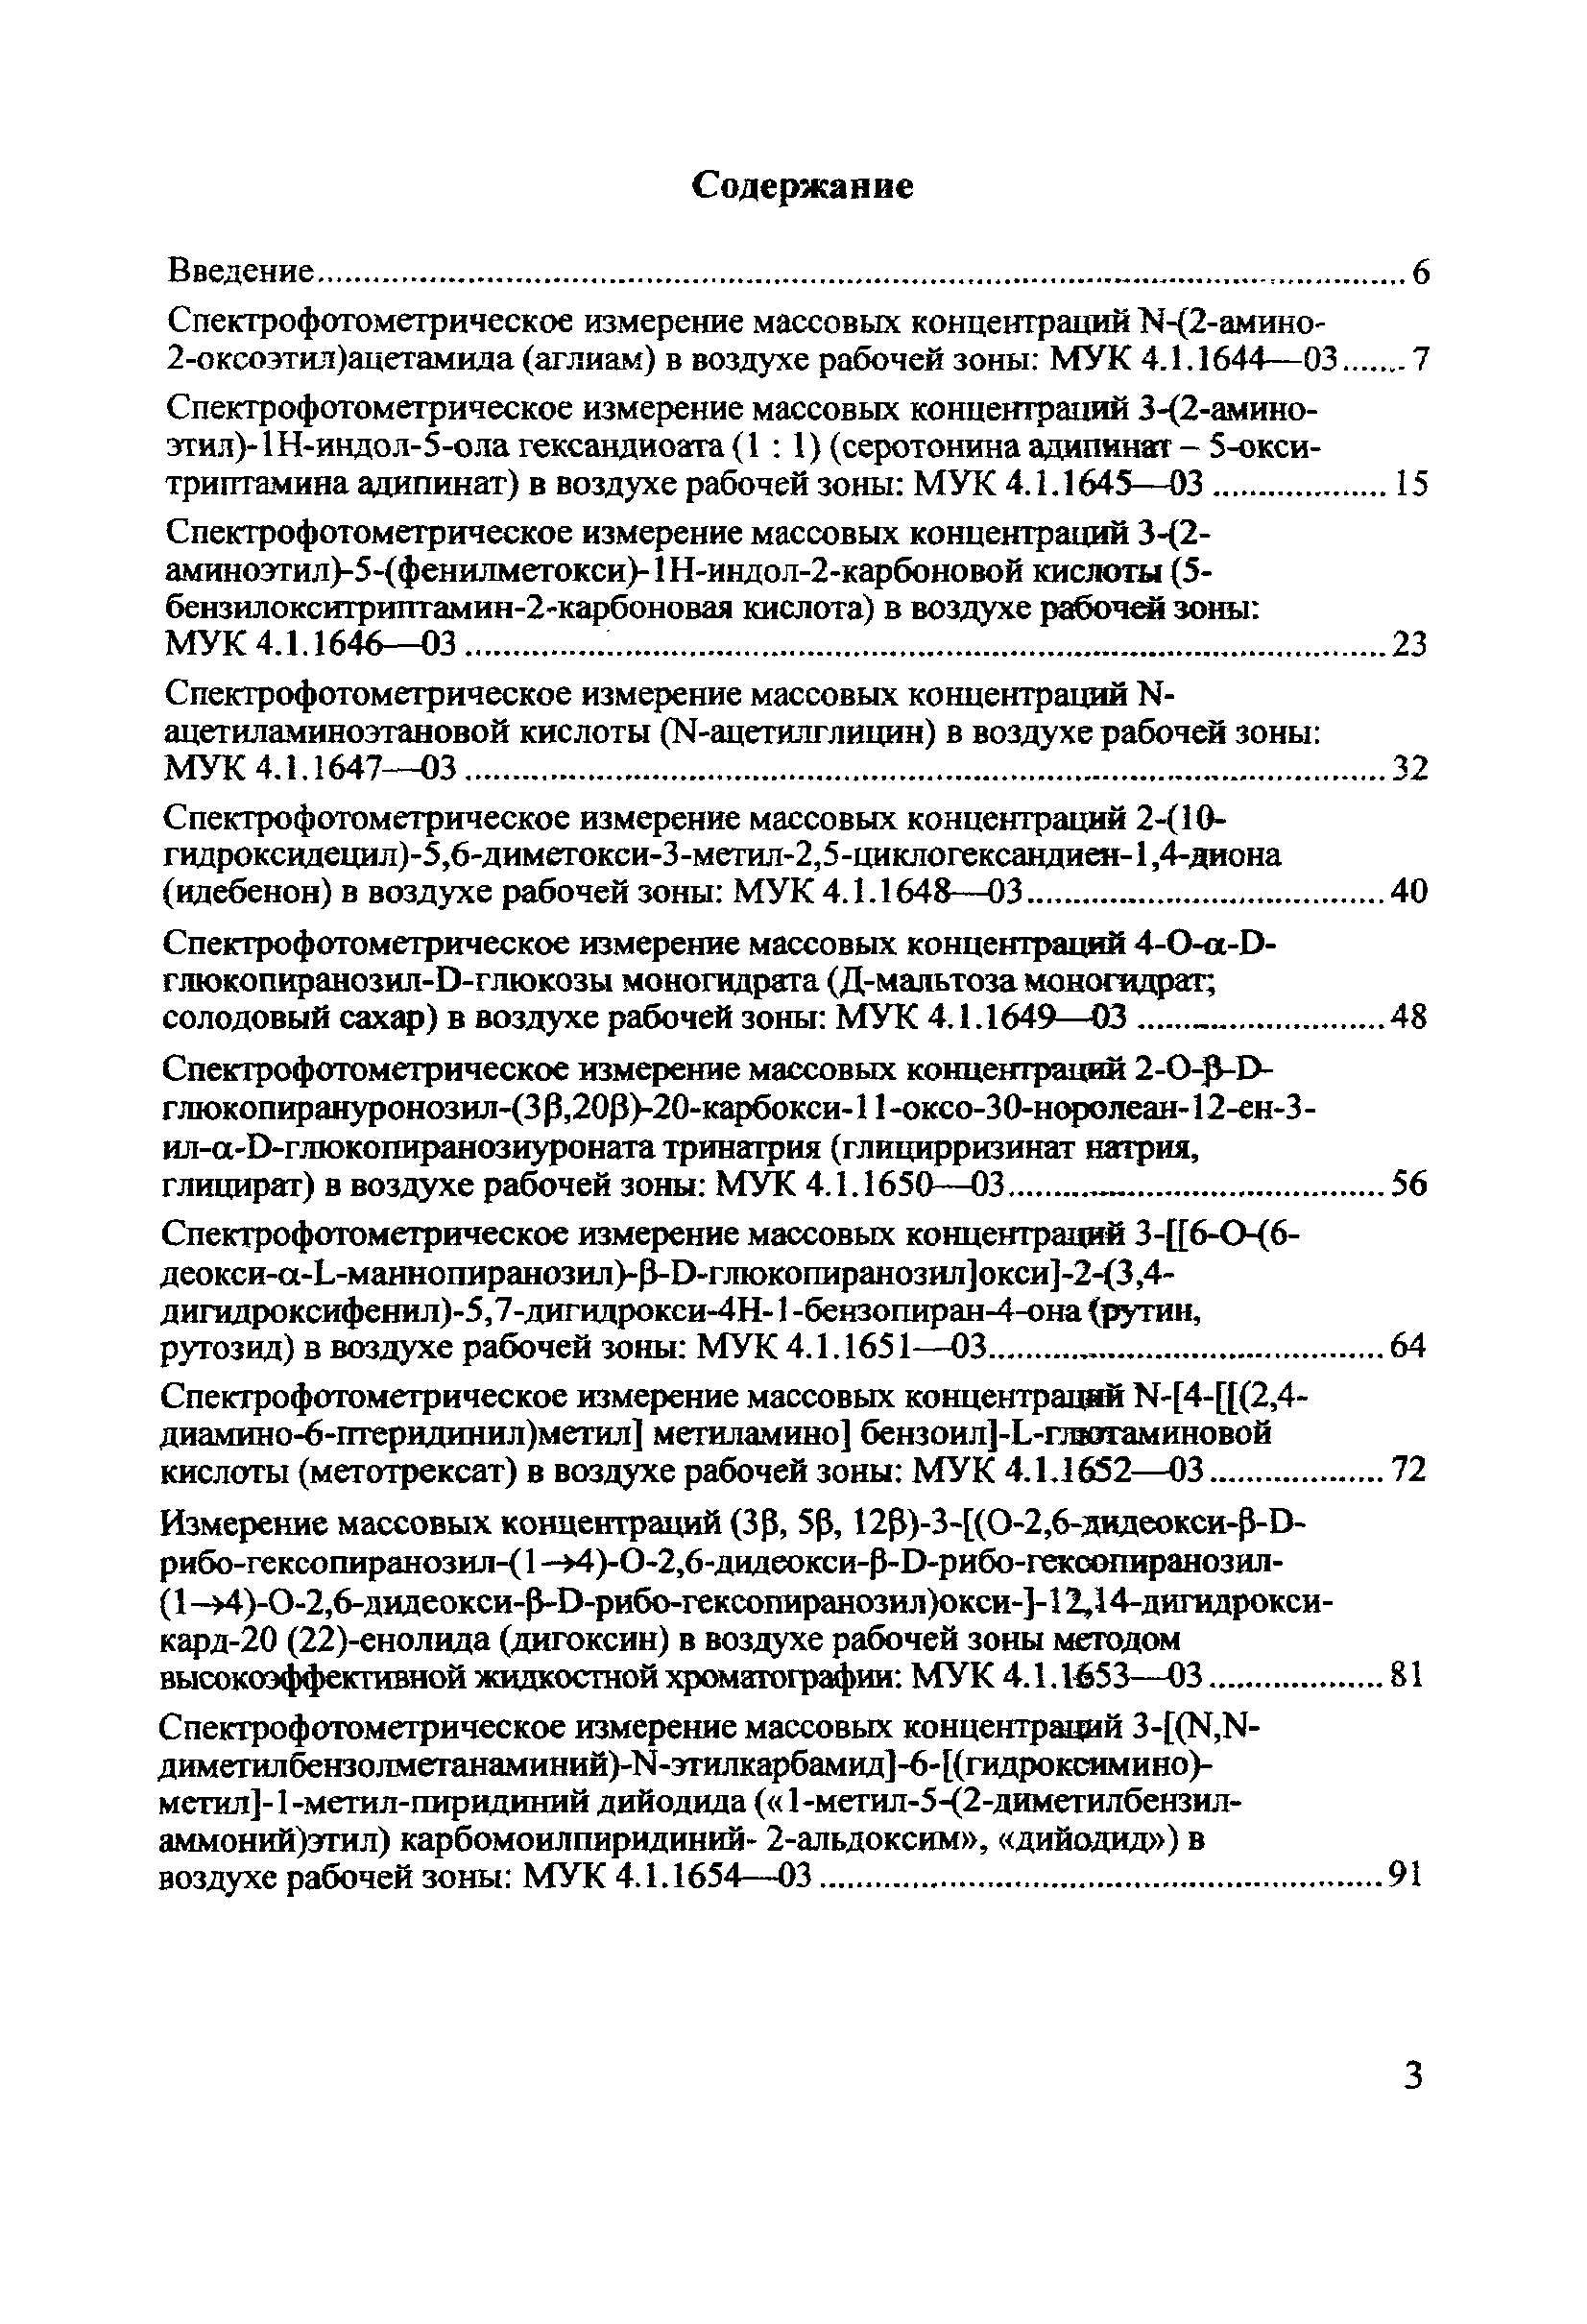 МУК 4.1.1650-03